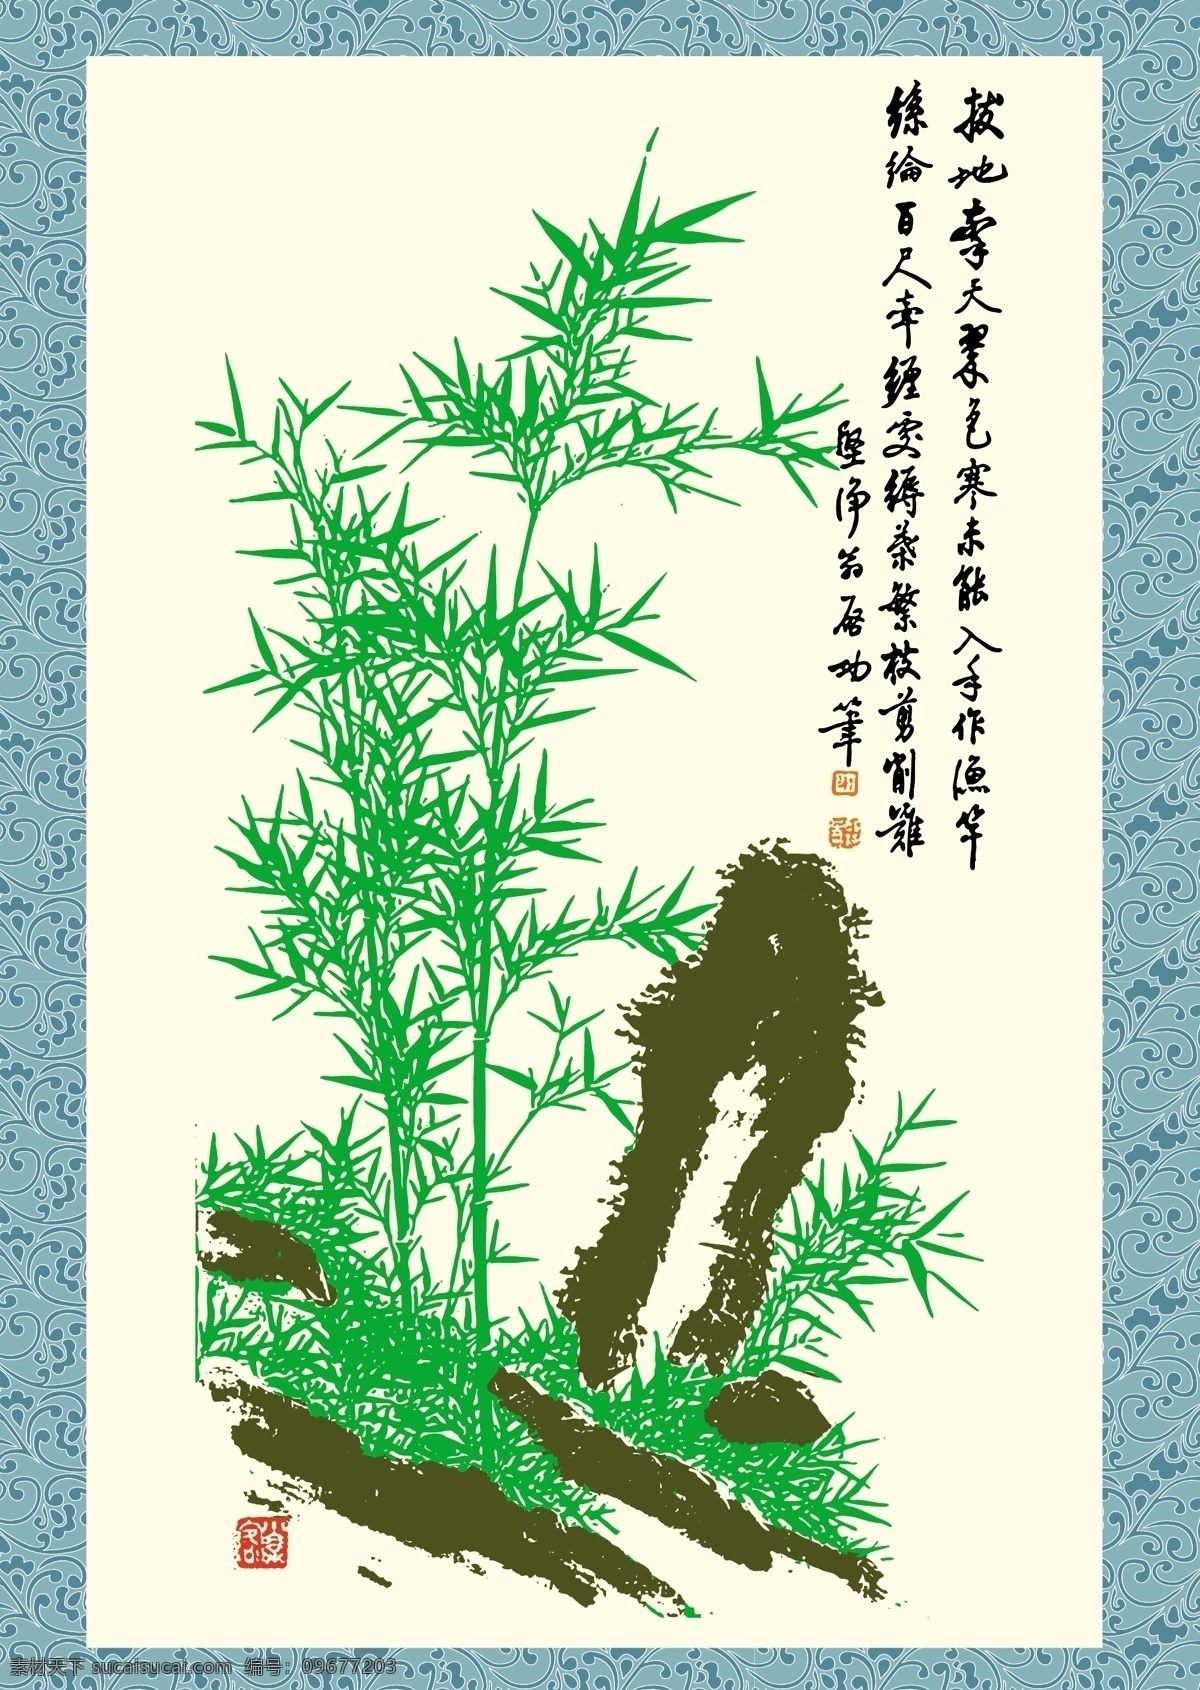 石竹 图 ai格式 美术绘画 矢量图 矢量中国画 文化艺术 石竹图 蓝缎装裱 其他矢量图